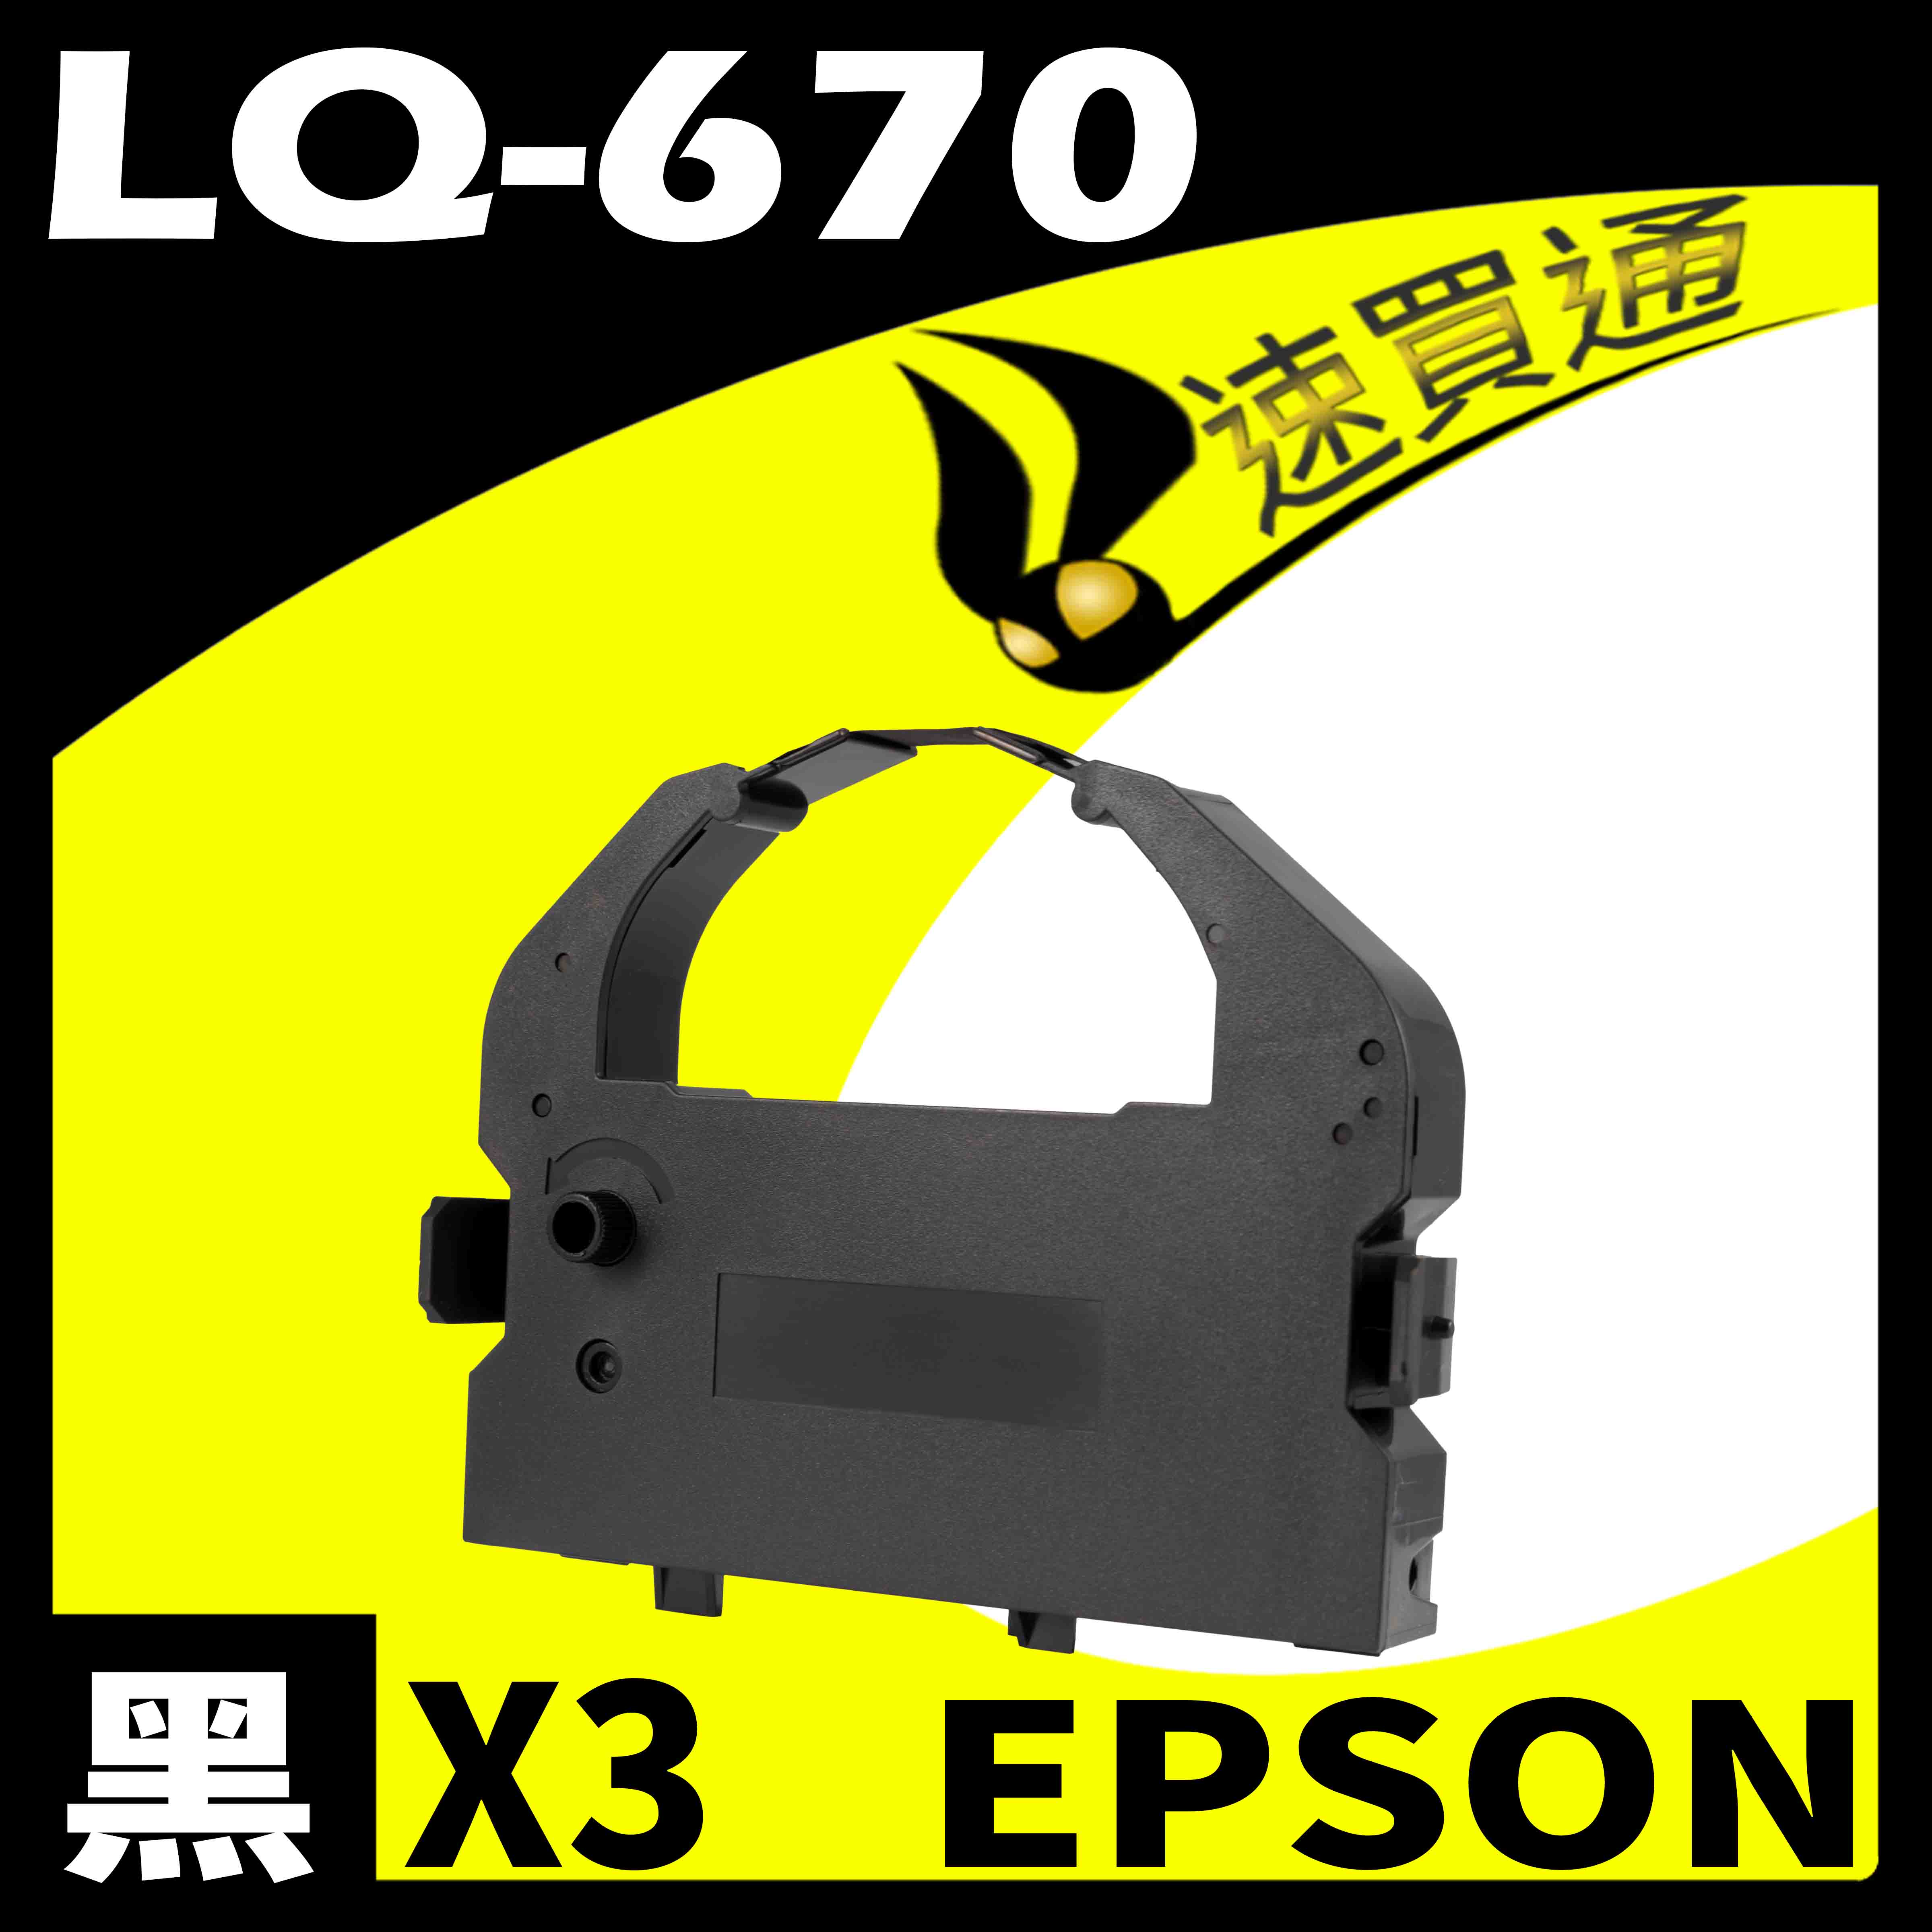 【速買通】超值3件組 EPSON LQ-670/680/2500/LQ2550 點陣印表機專用相容色帶